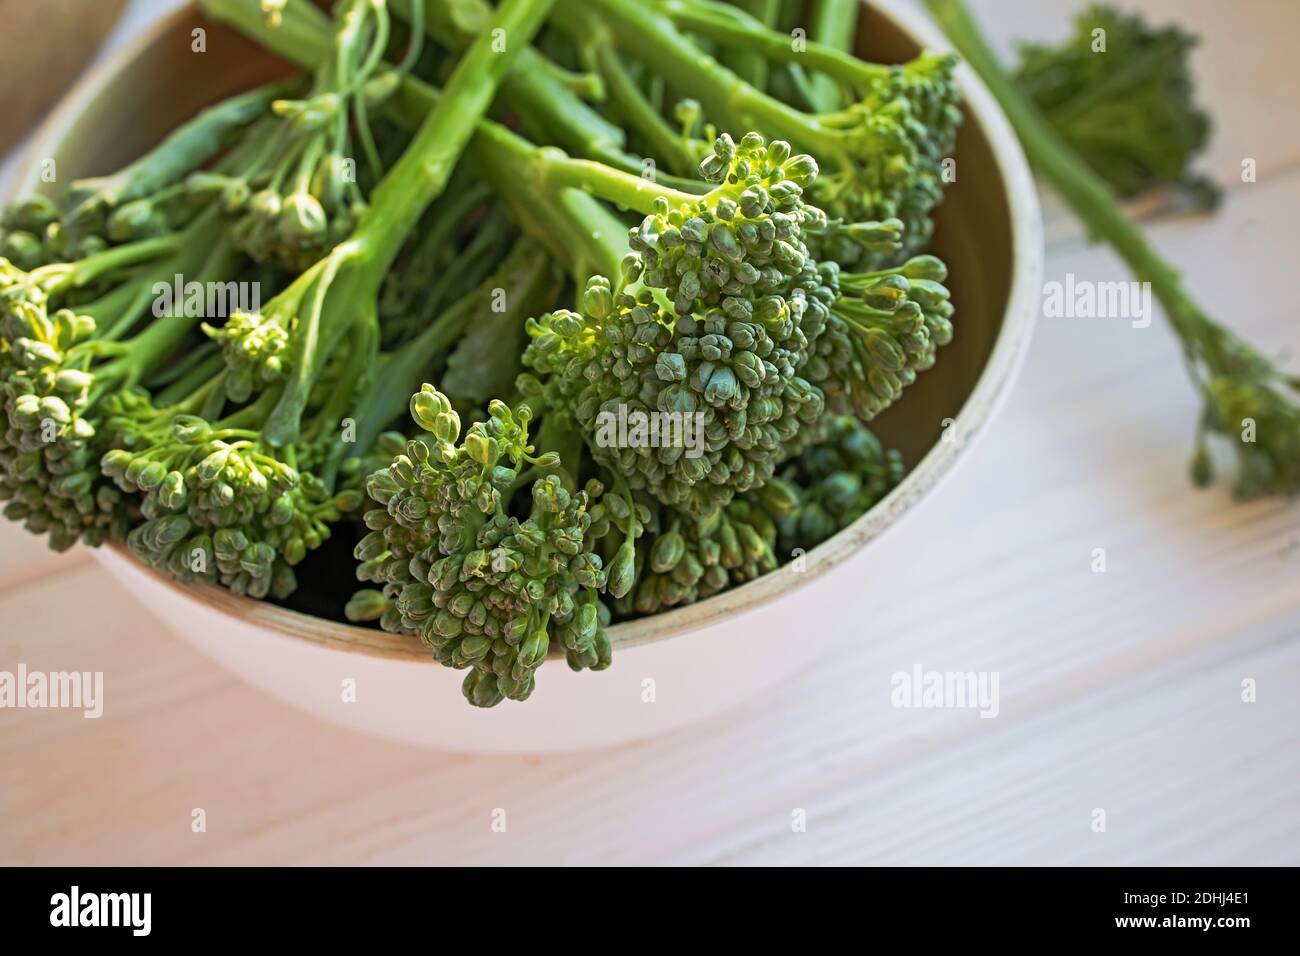 Verdure crude verdi broccolini. Cibo biologico sano, primo piano Foto Stock